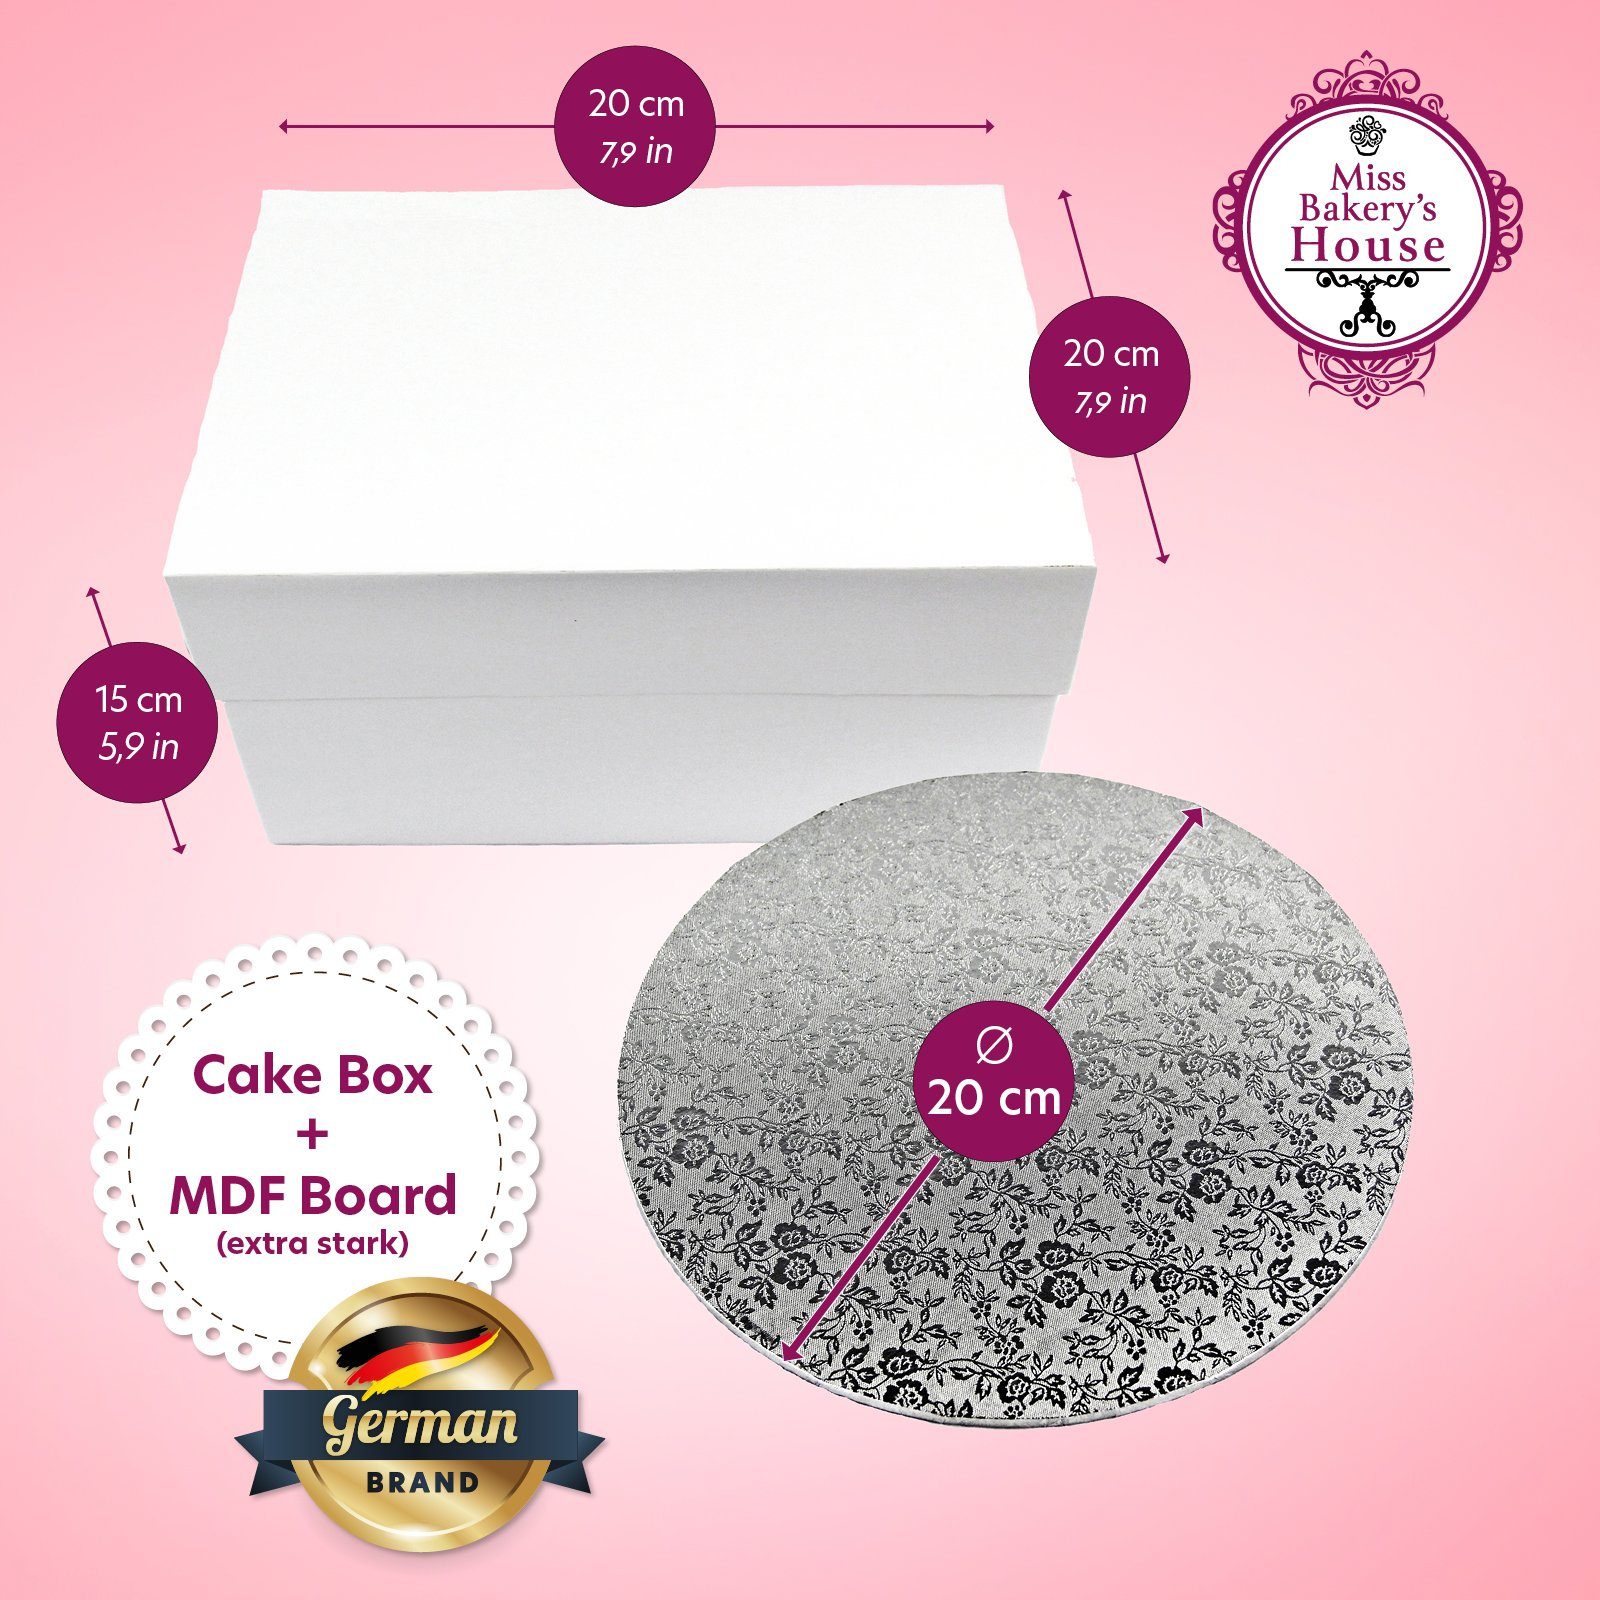 Miss Bakery's Mdf & sicher weiß/silber + Cake Box transportieren Set), Tortenkarton, aufbewahren House und Board, Tortenunterlage, (Kartonbox Kuchentransportbox Gebäck